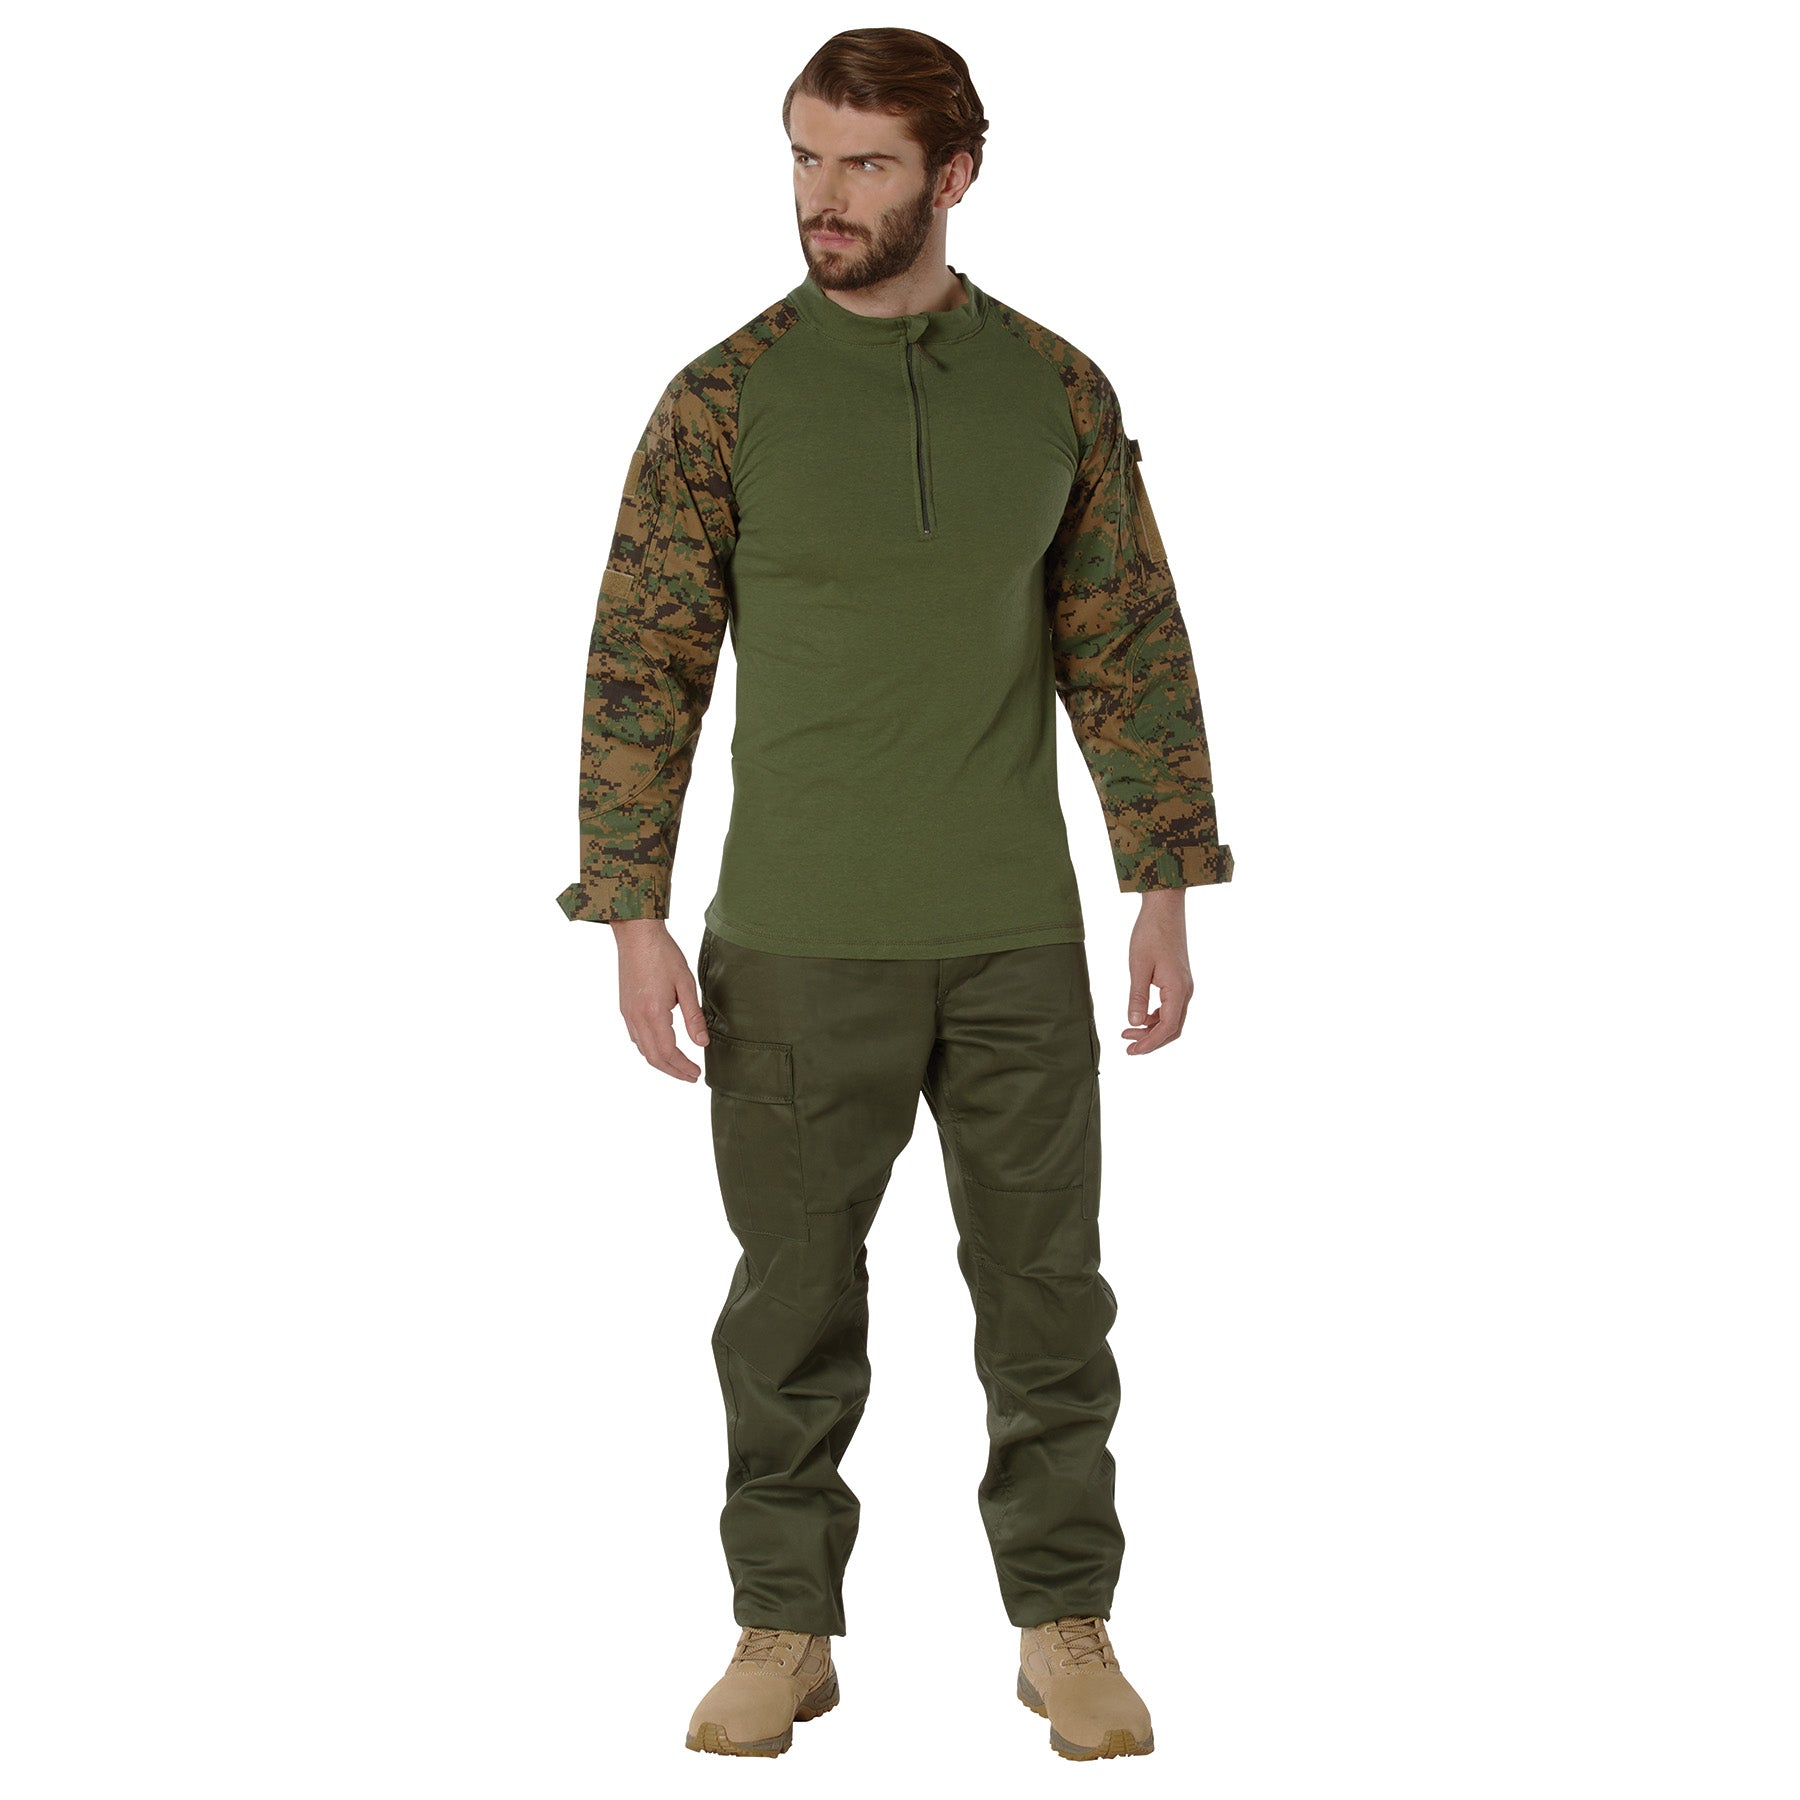 [1/4 Zip] Digital Camo Poly/Cotton Tactical Combat Shirts